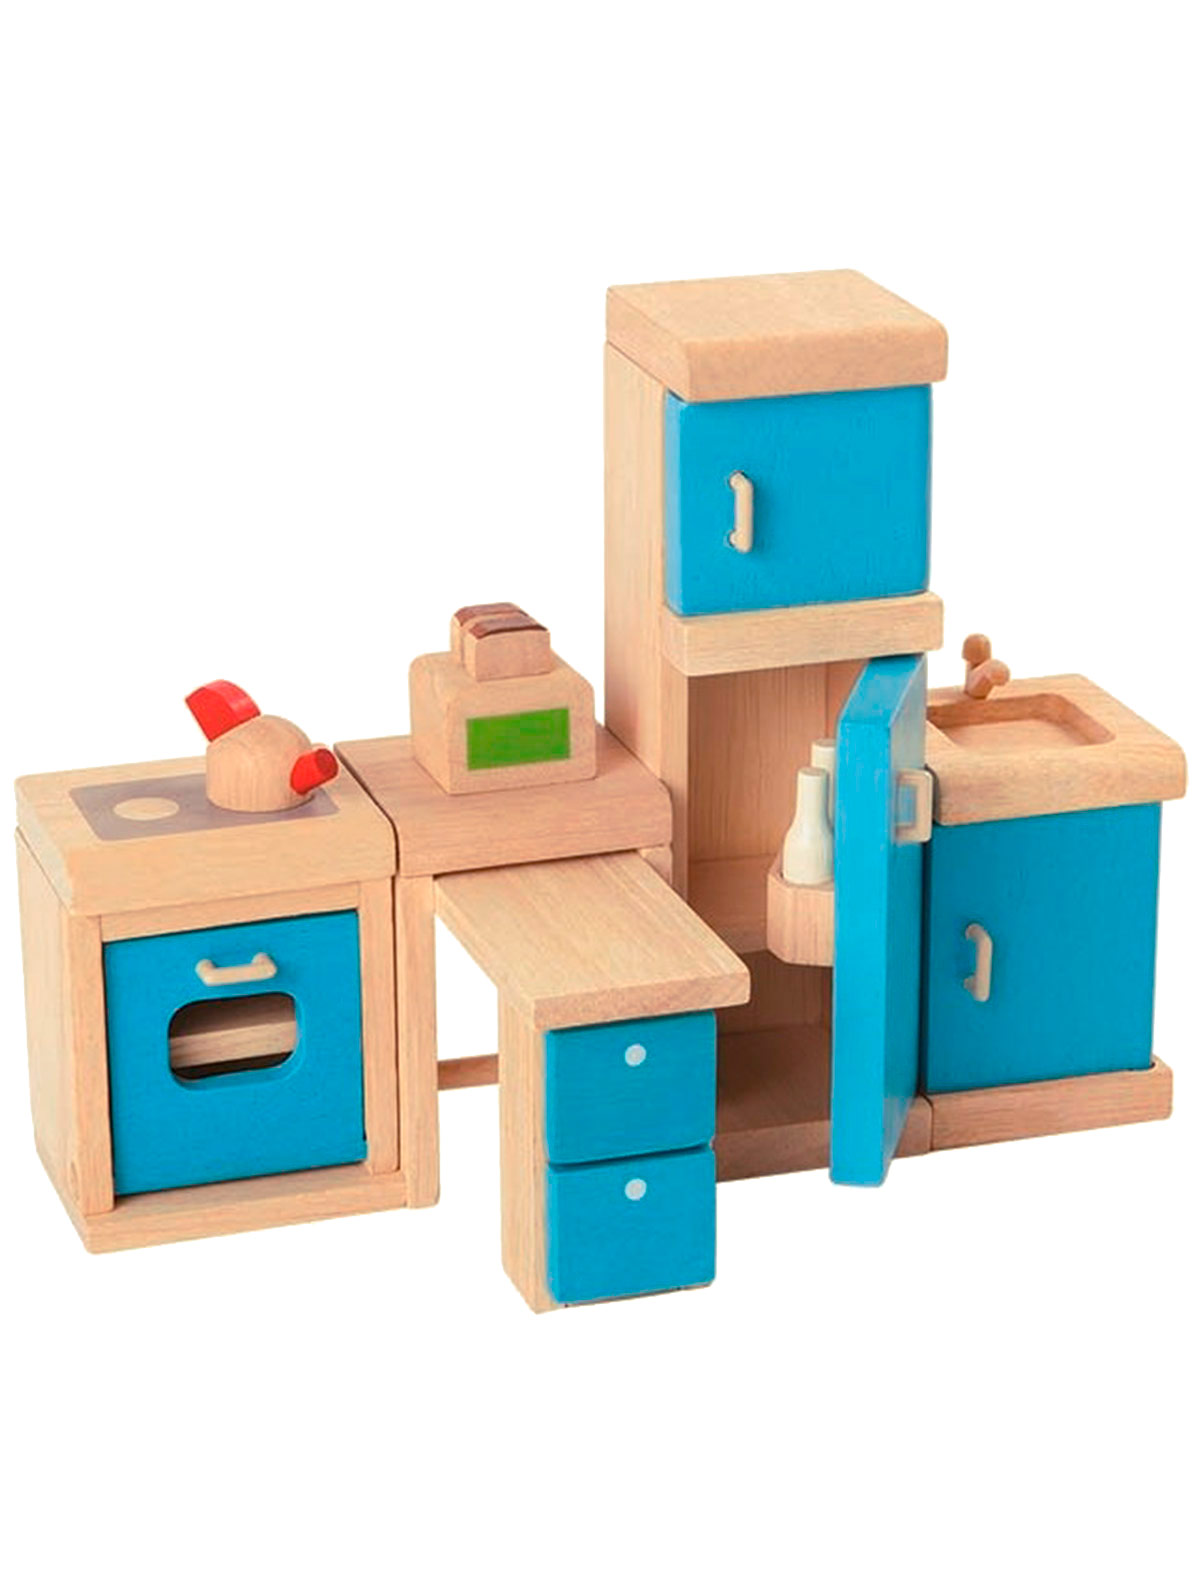 детская игрушечная мебель из дерева